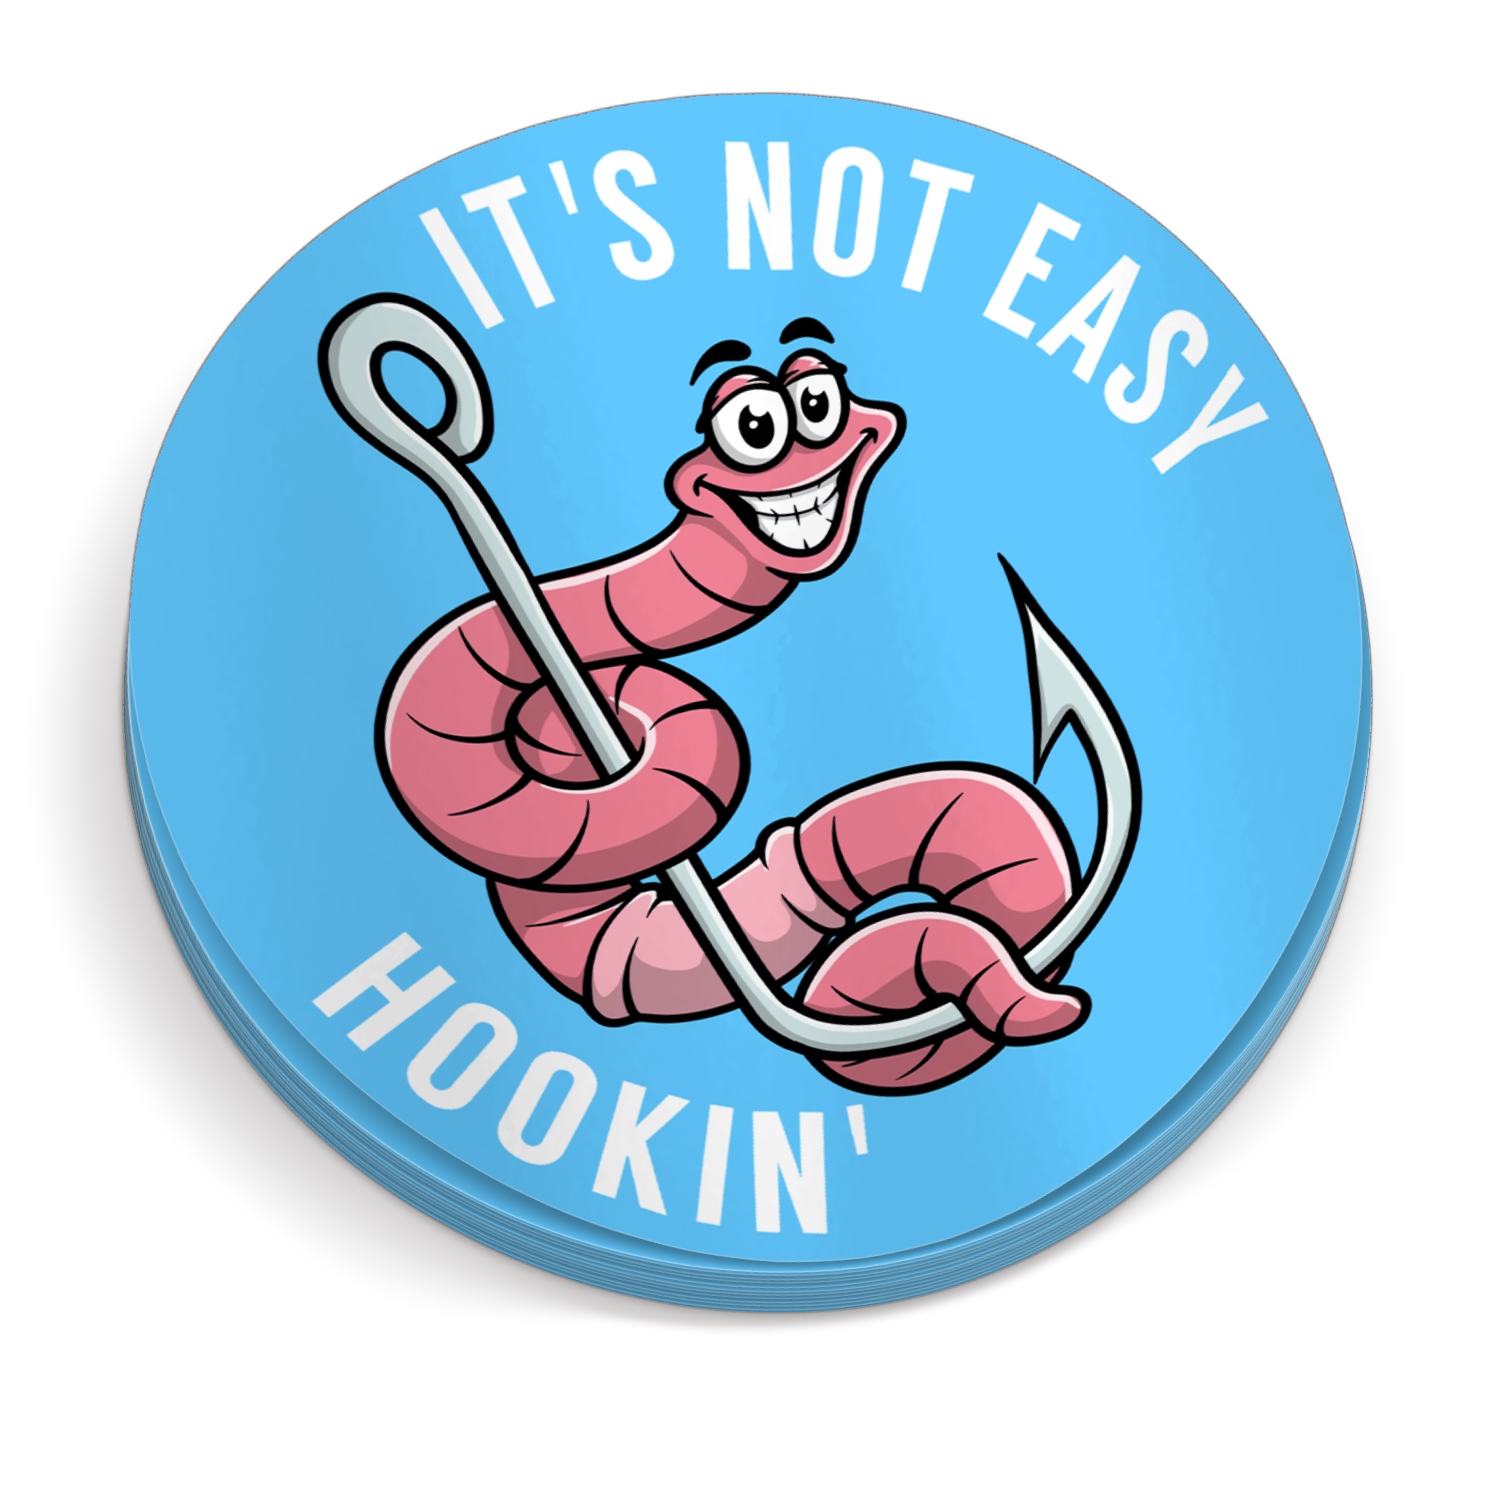 It's Not Easy Hookin - Funny Fishing Sticker